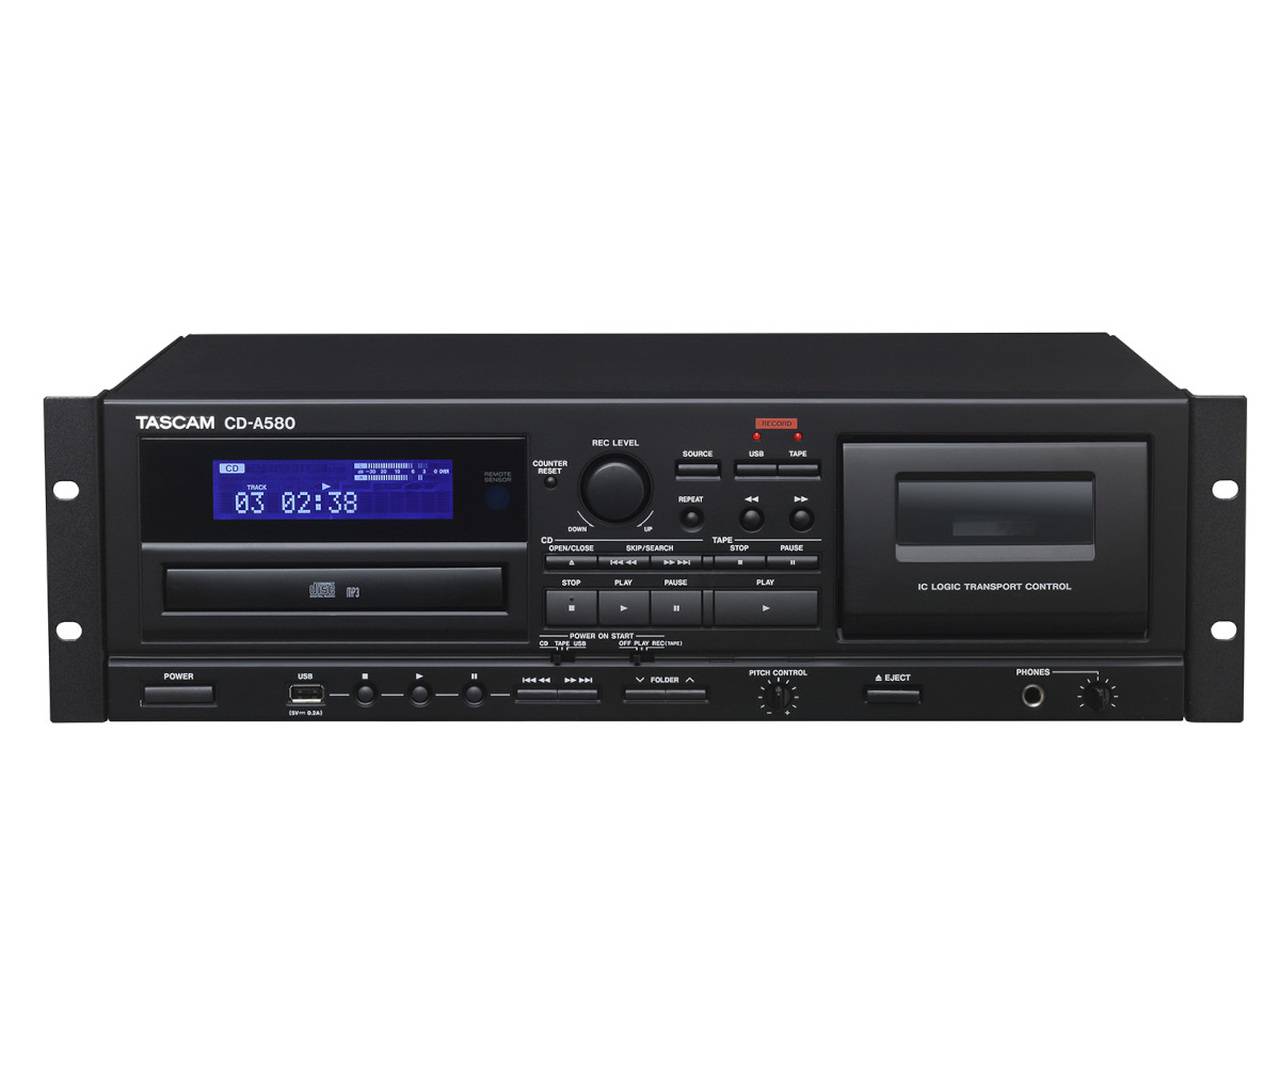 Tascam CD-A580